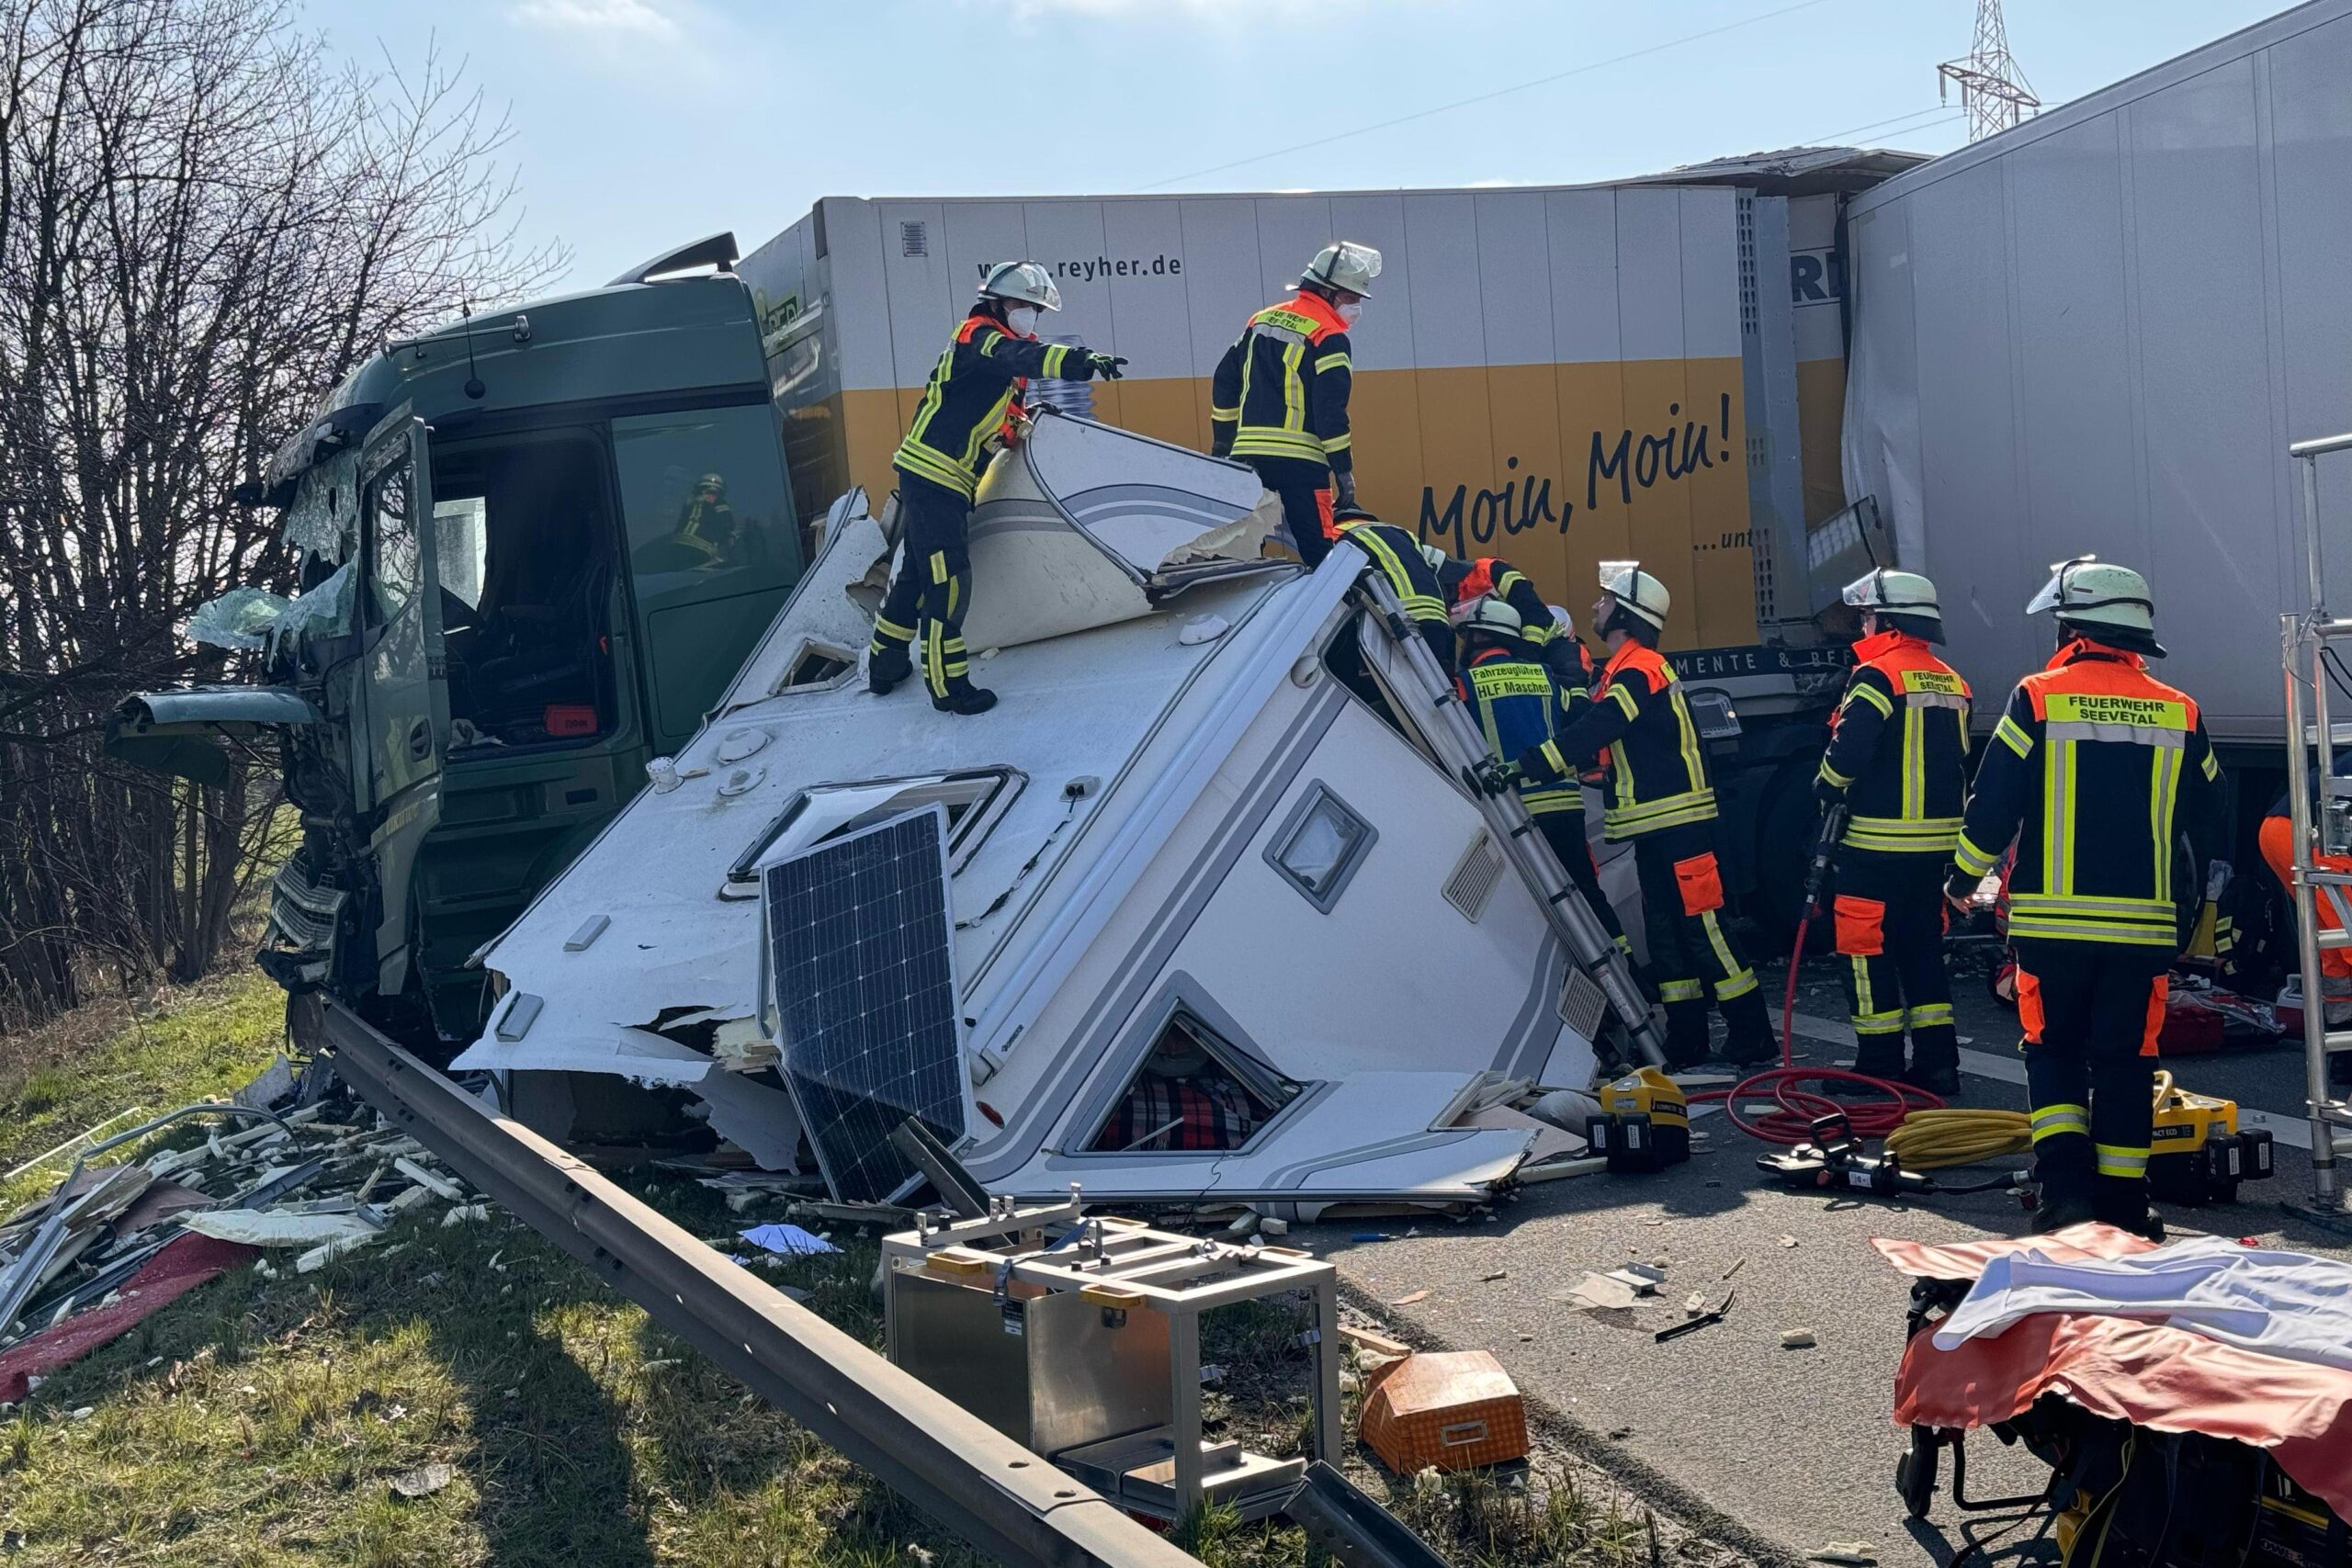 Schwerer Unfall auf A1 bei Hamburg – mehrere Verletzte. Autobahn voll gesperrt